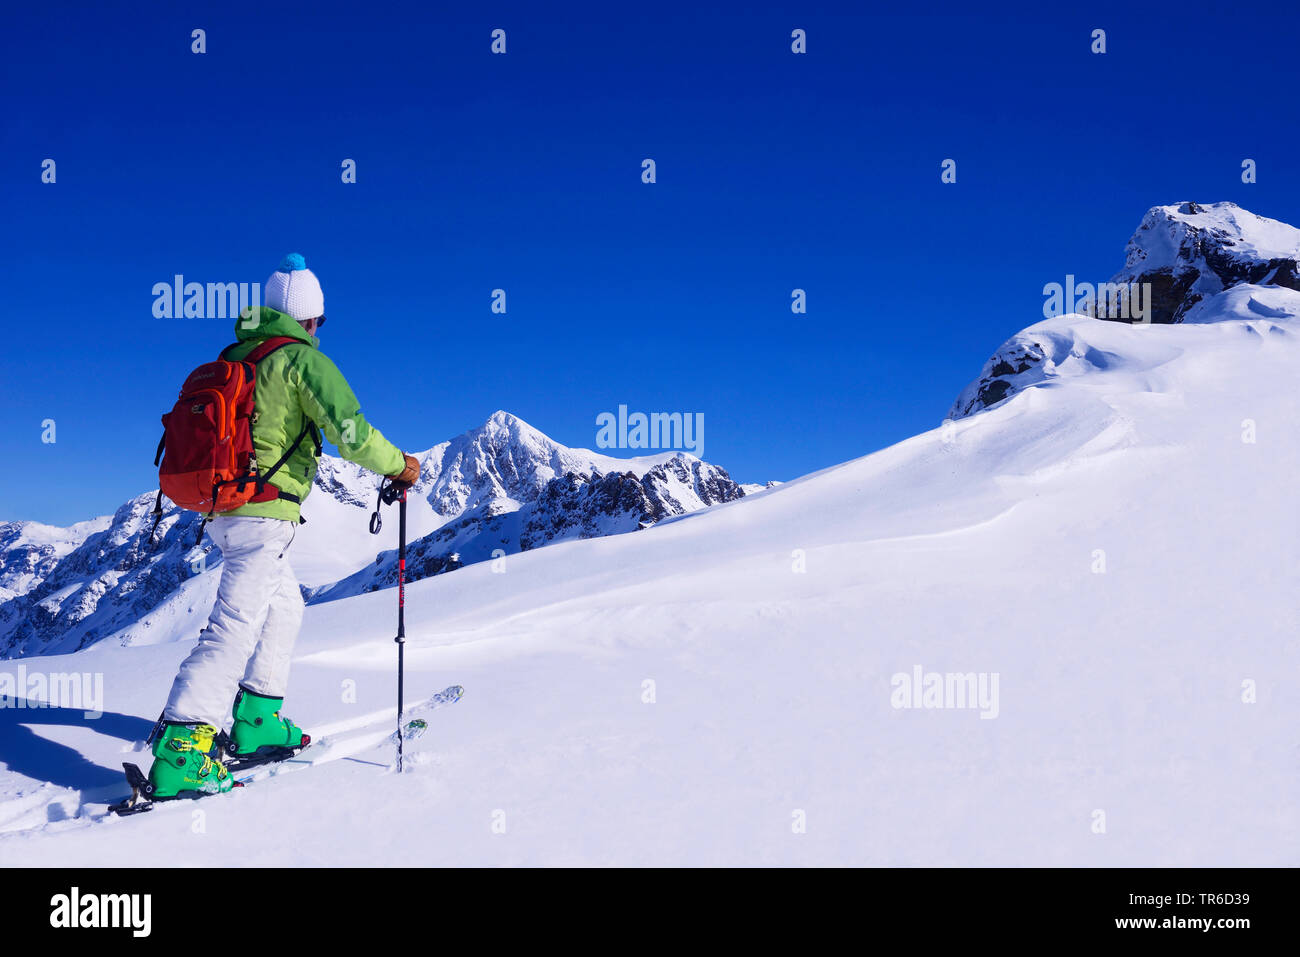 Ski tourer in snowy mountain scenery, France, Savoie, Sainte Foy Tarentaise Stock Photo